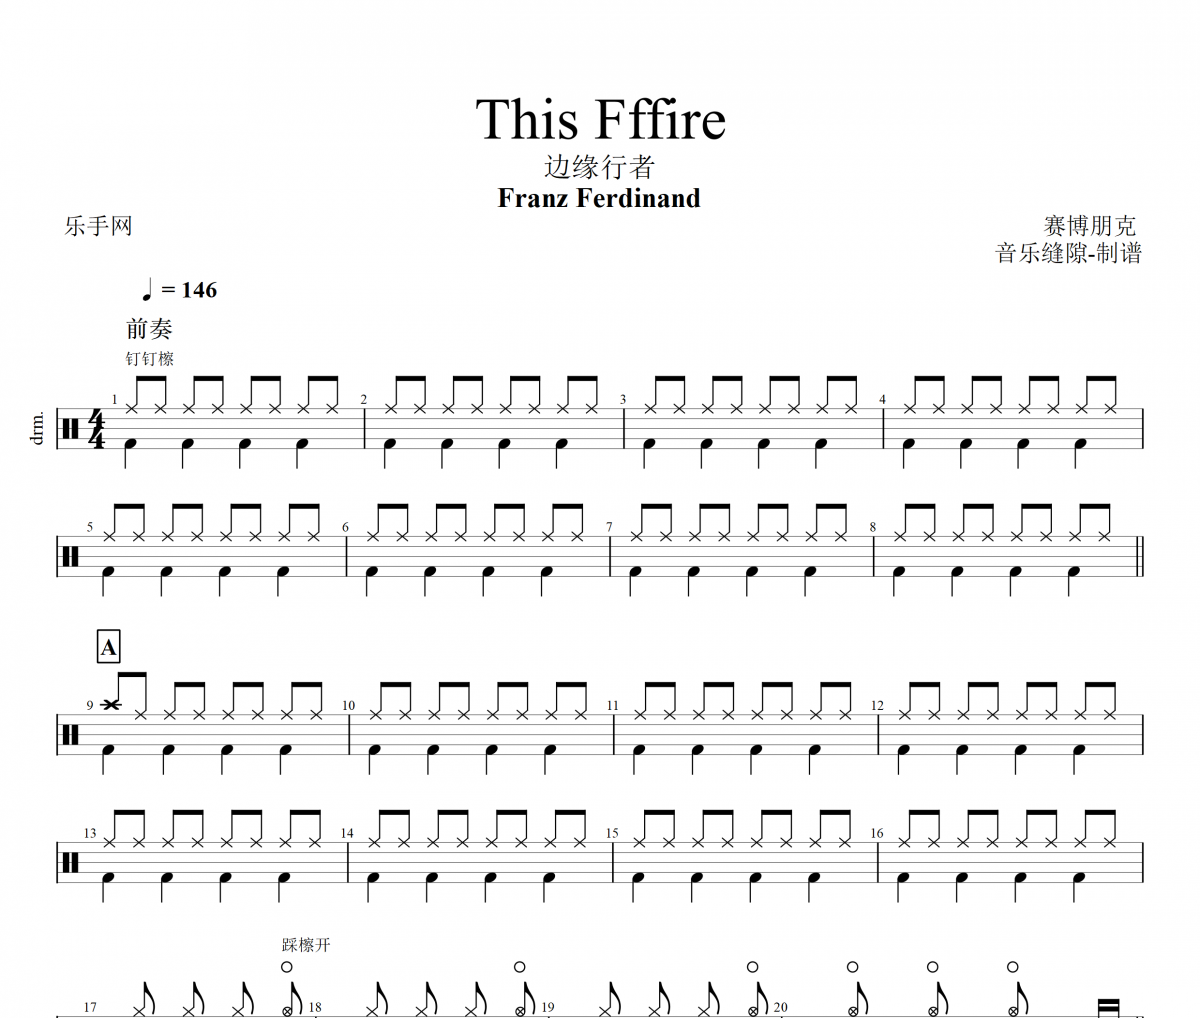 This Fffire鼓谱 Franz Ferdinand-This Fffire架子鼓谱+动态鼓谱视频